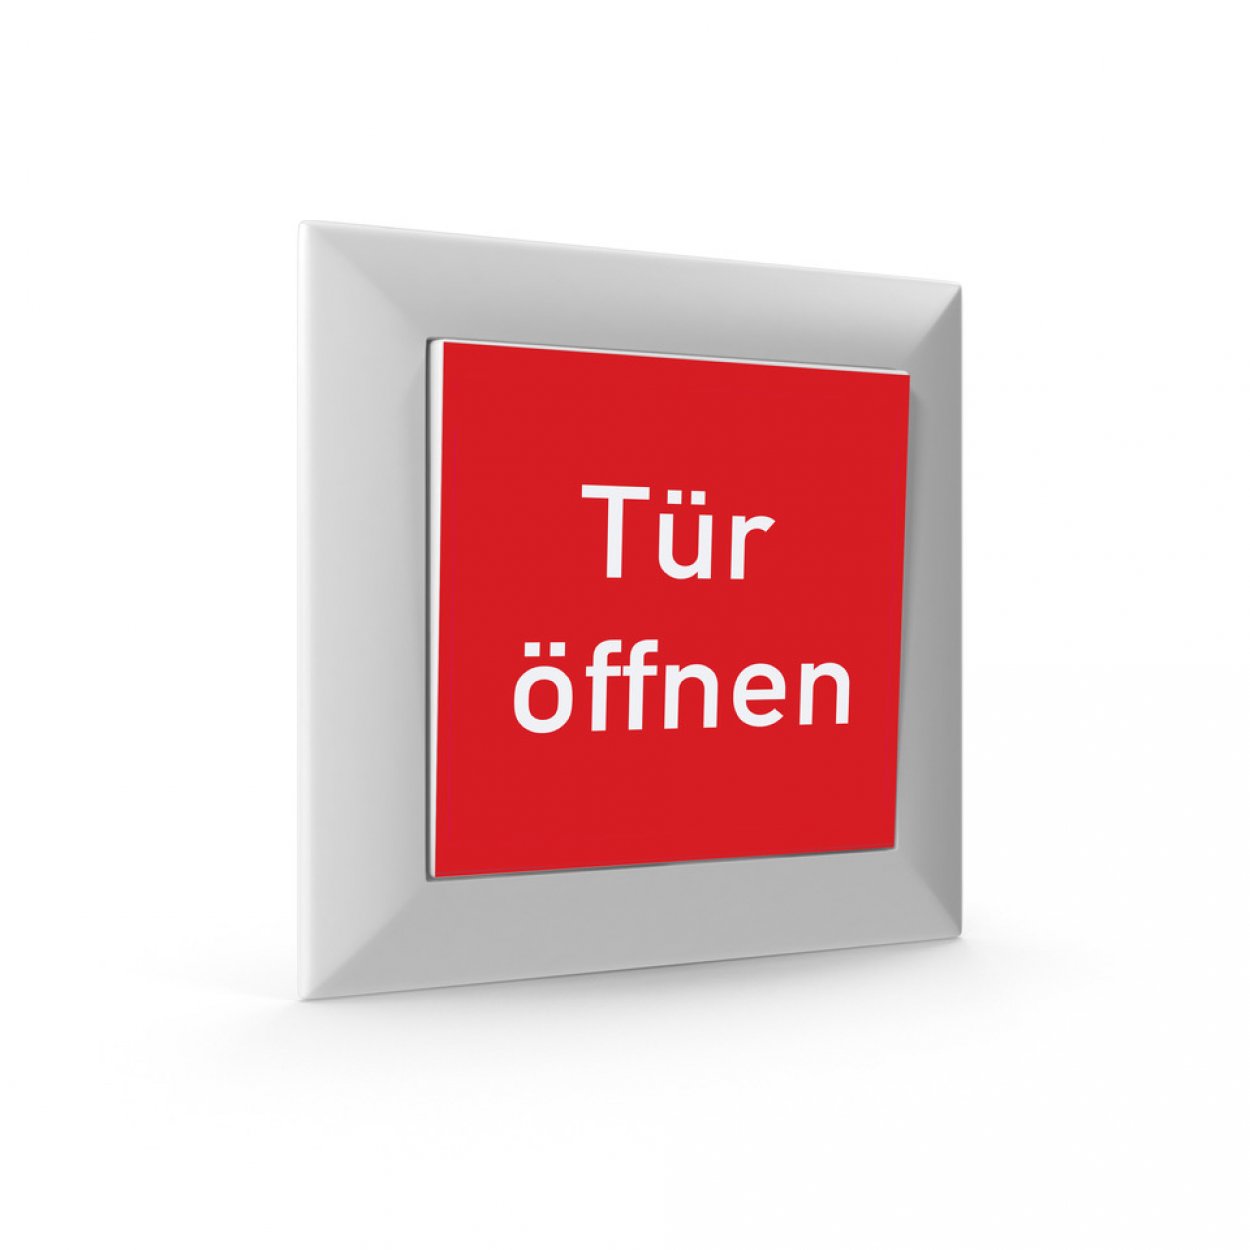 2 Stück Aufkleber für Taster Tür Schalter "Tür öffnen" 52x52mm Folie rot made by MBS-SIGNS in Germany